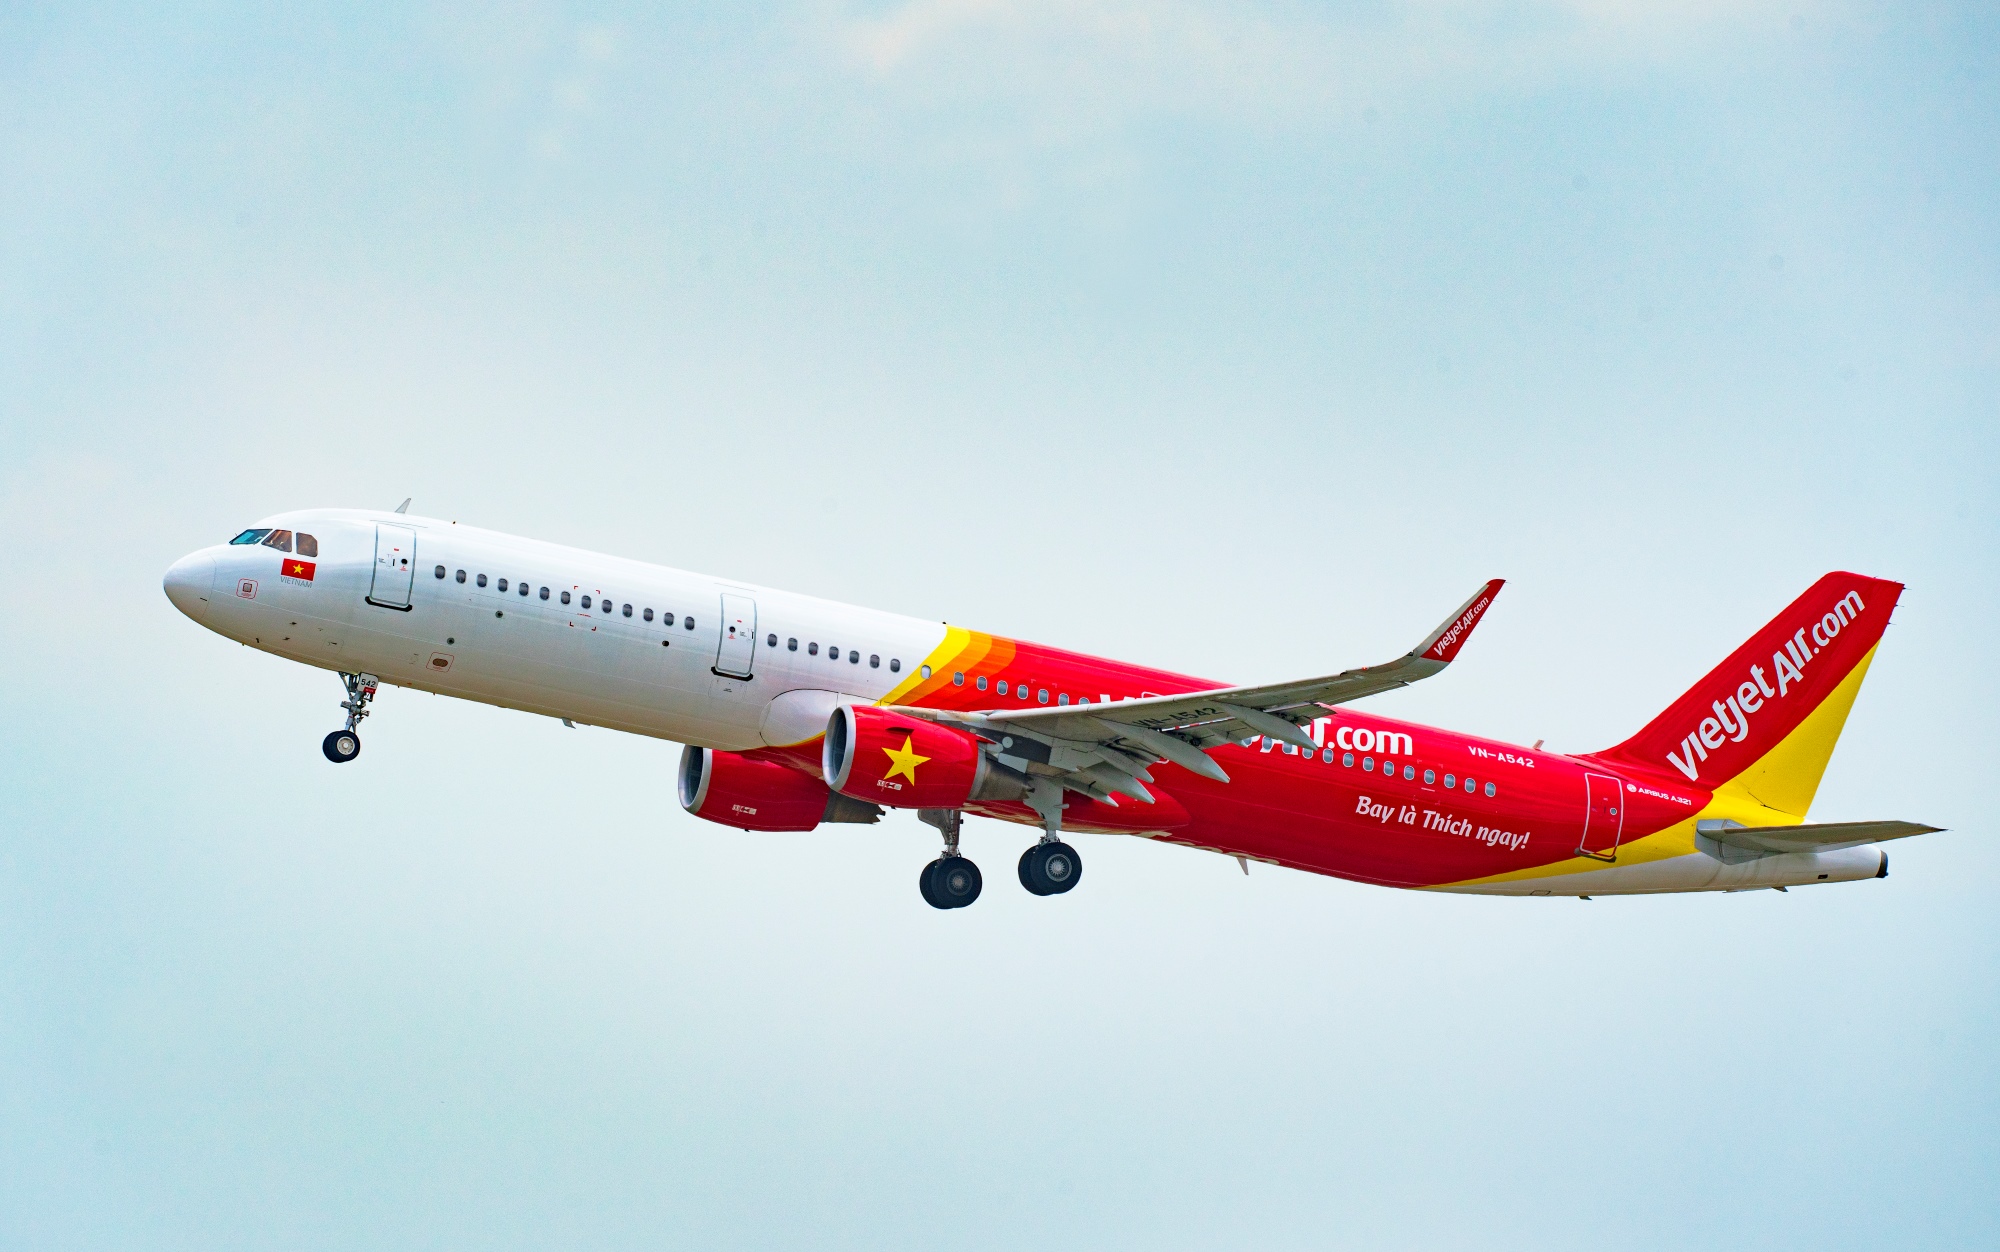 Vietjet mở thêm 5 đường bay quốc tế mới đến Đài Bắc, Hong Kong, Busan, Adelaide, Perth giá chỉ từ 0 đồng - Ảnh 1.